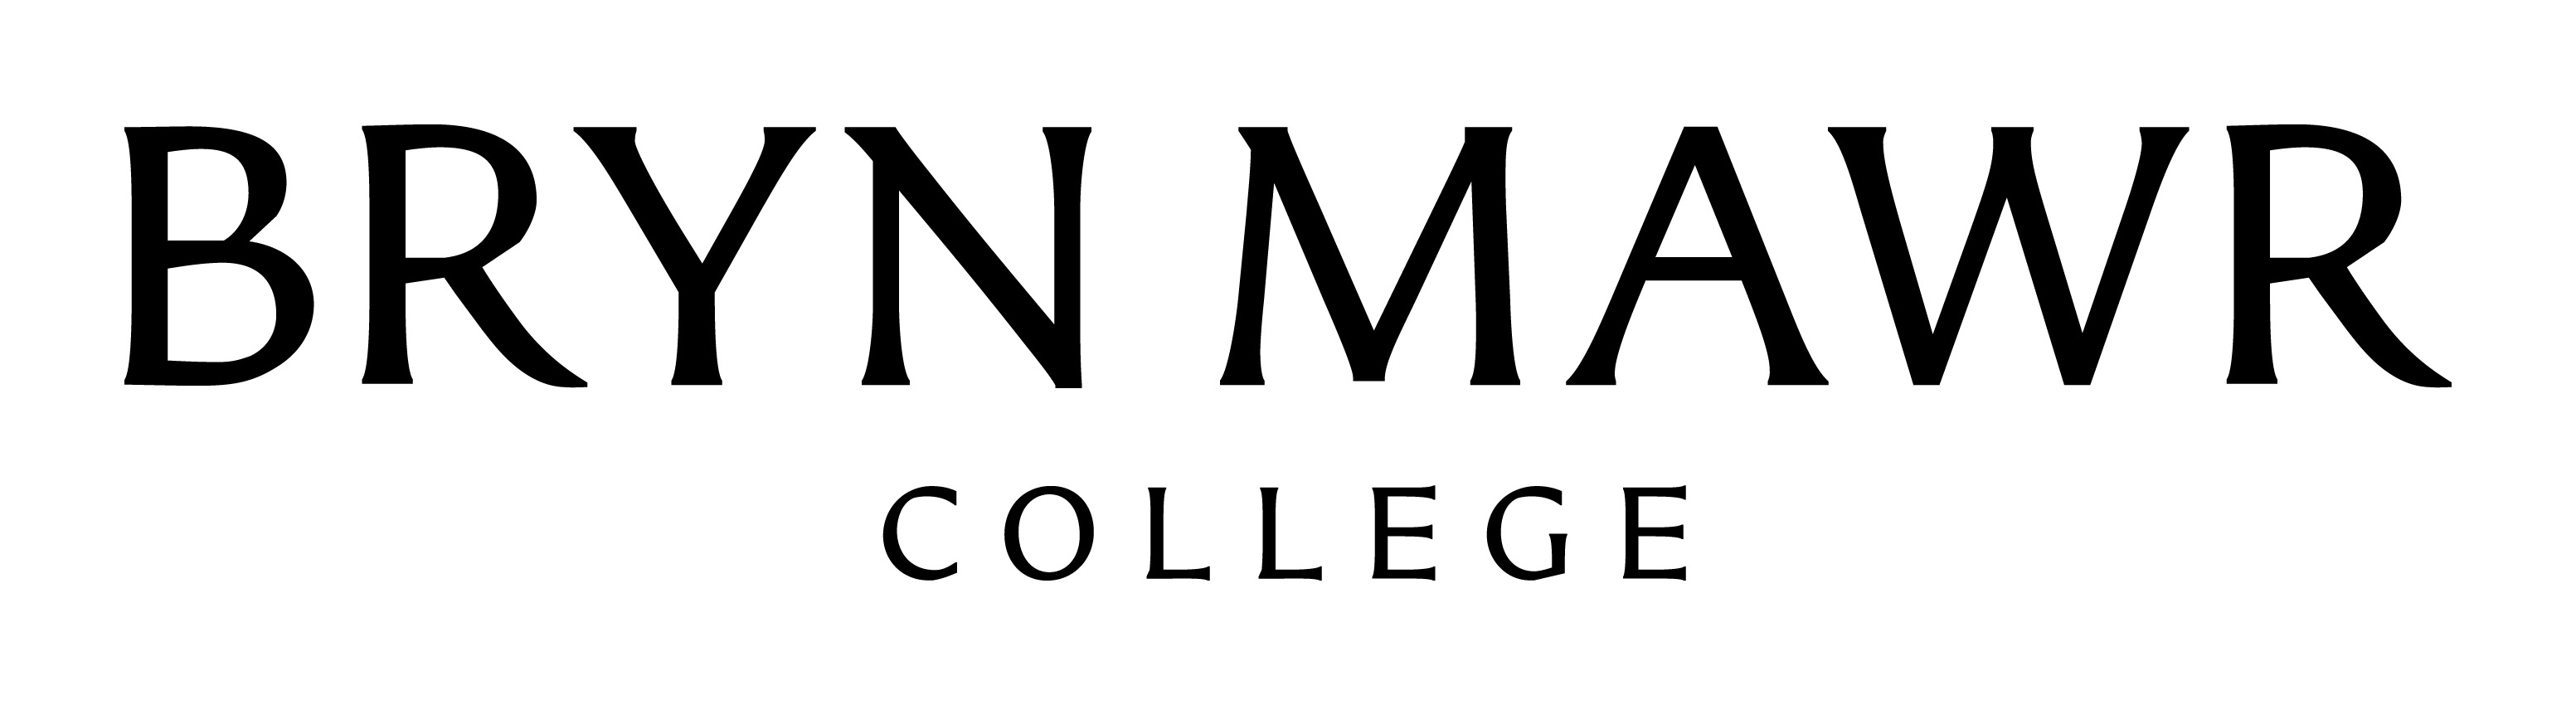 Bryn Mawr College logo